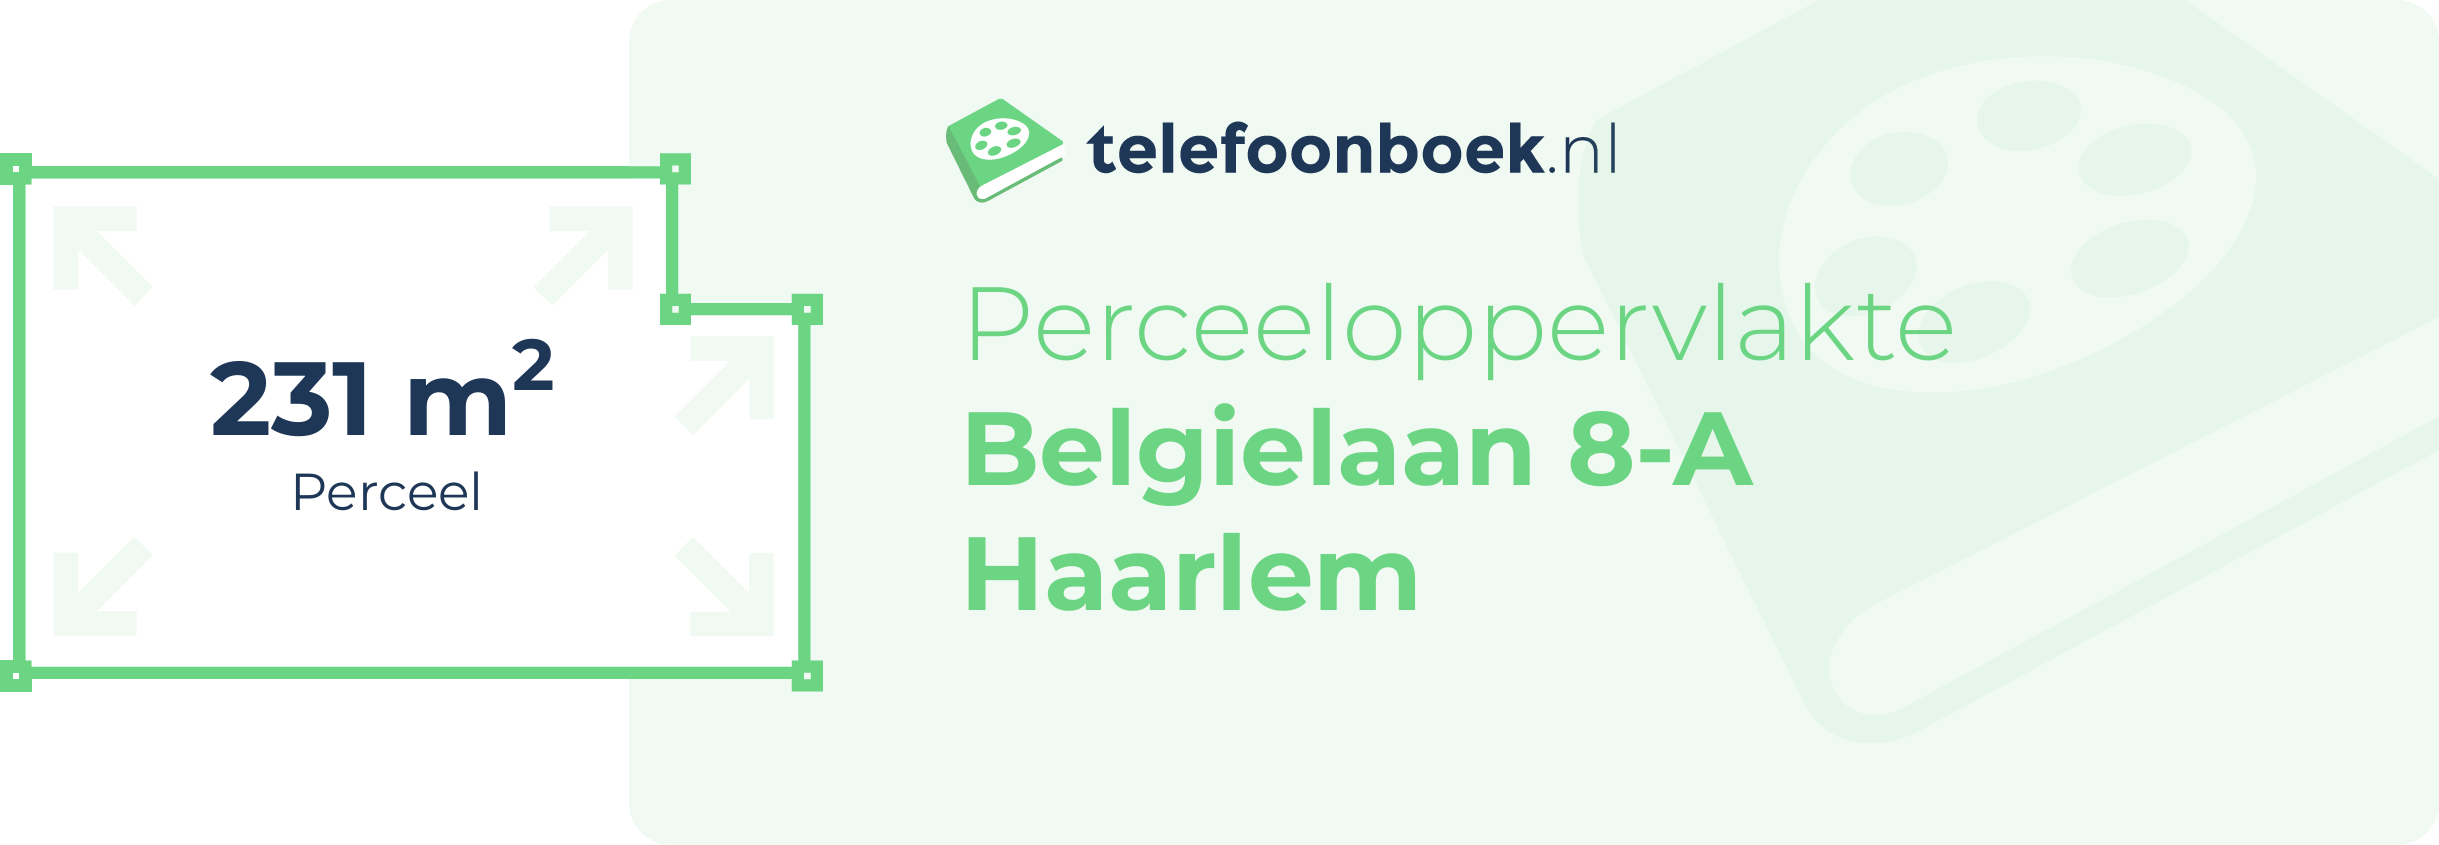 Perceeloppervlakte Belgielaan 8-A Haarlem